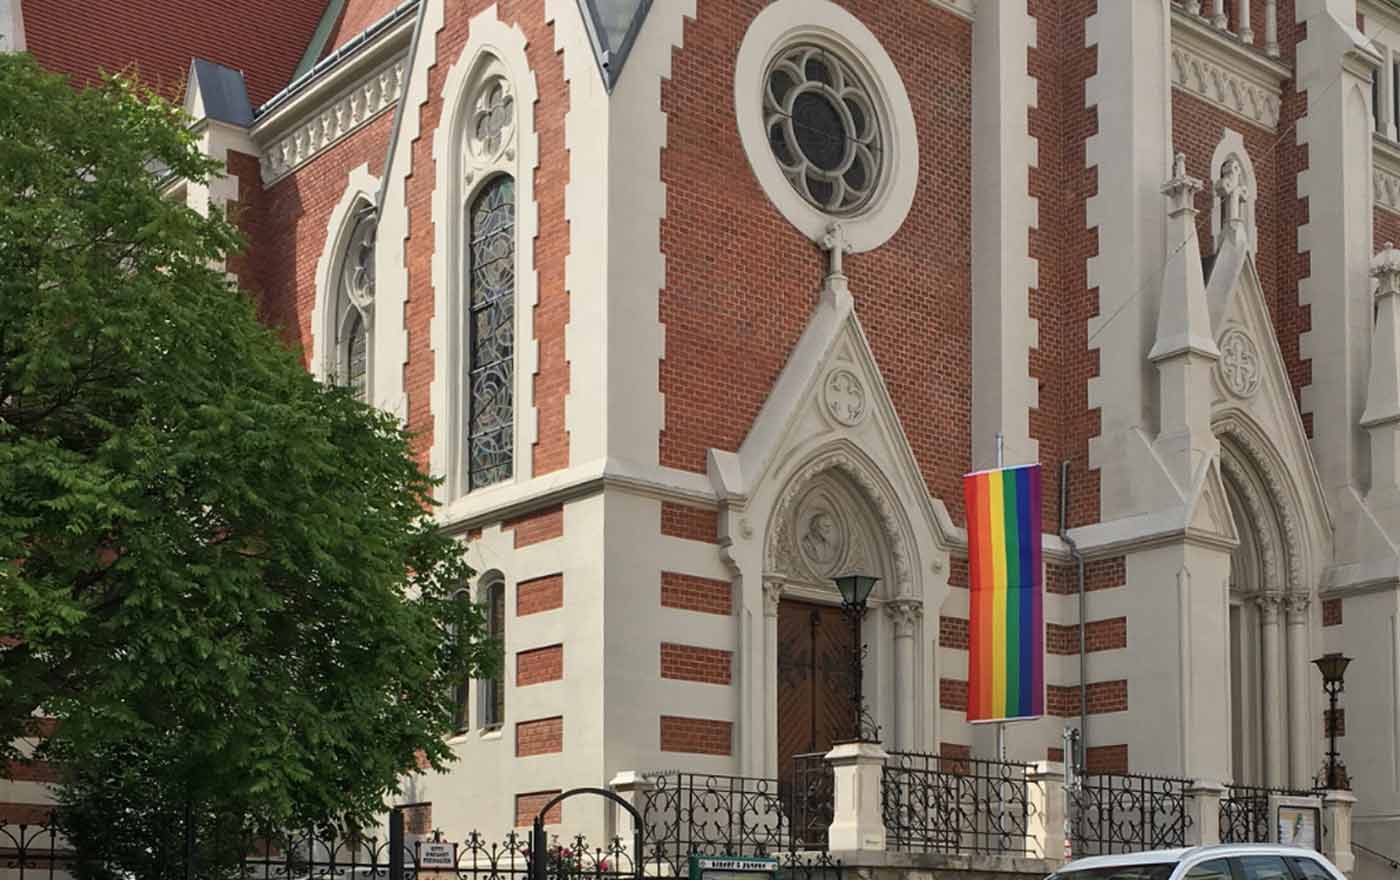 Allen Benachteiligungen von LGBTIQ-Personen soll "die Liebe Gottes zu all seinen vielfältigen Geschöpfen ein kräftiges und ermutigendes Gegenüber setzen“, so Pfarrerin Barbara Heyse-Schaefer. Foto: Lutherkirche